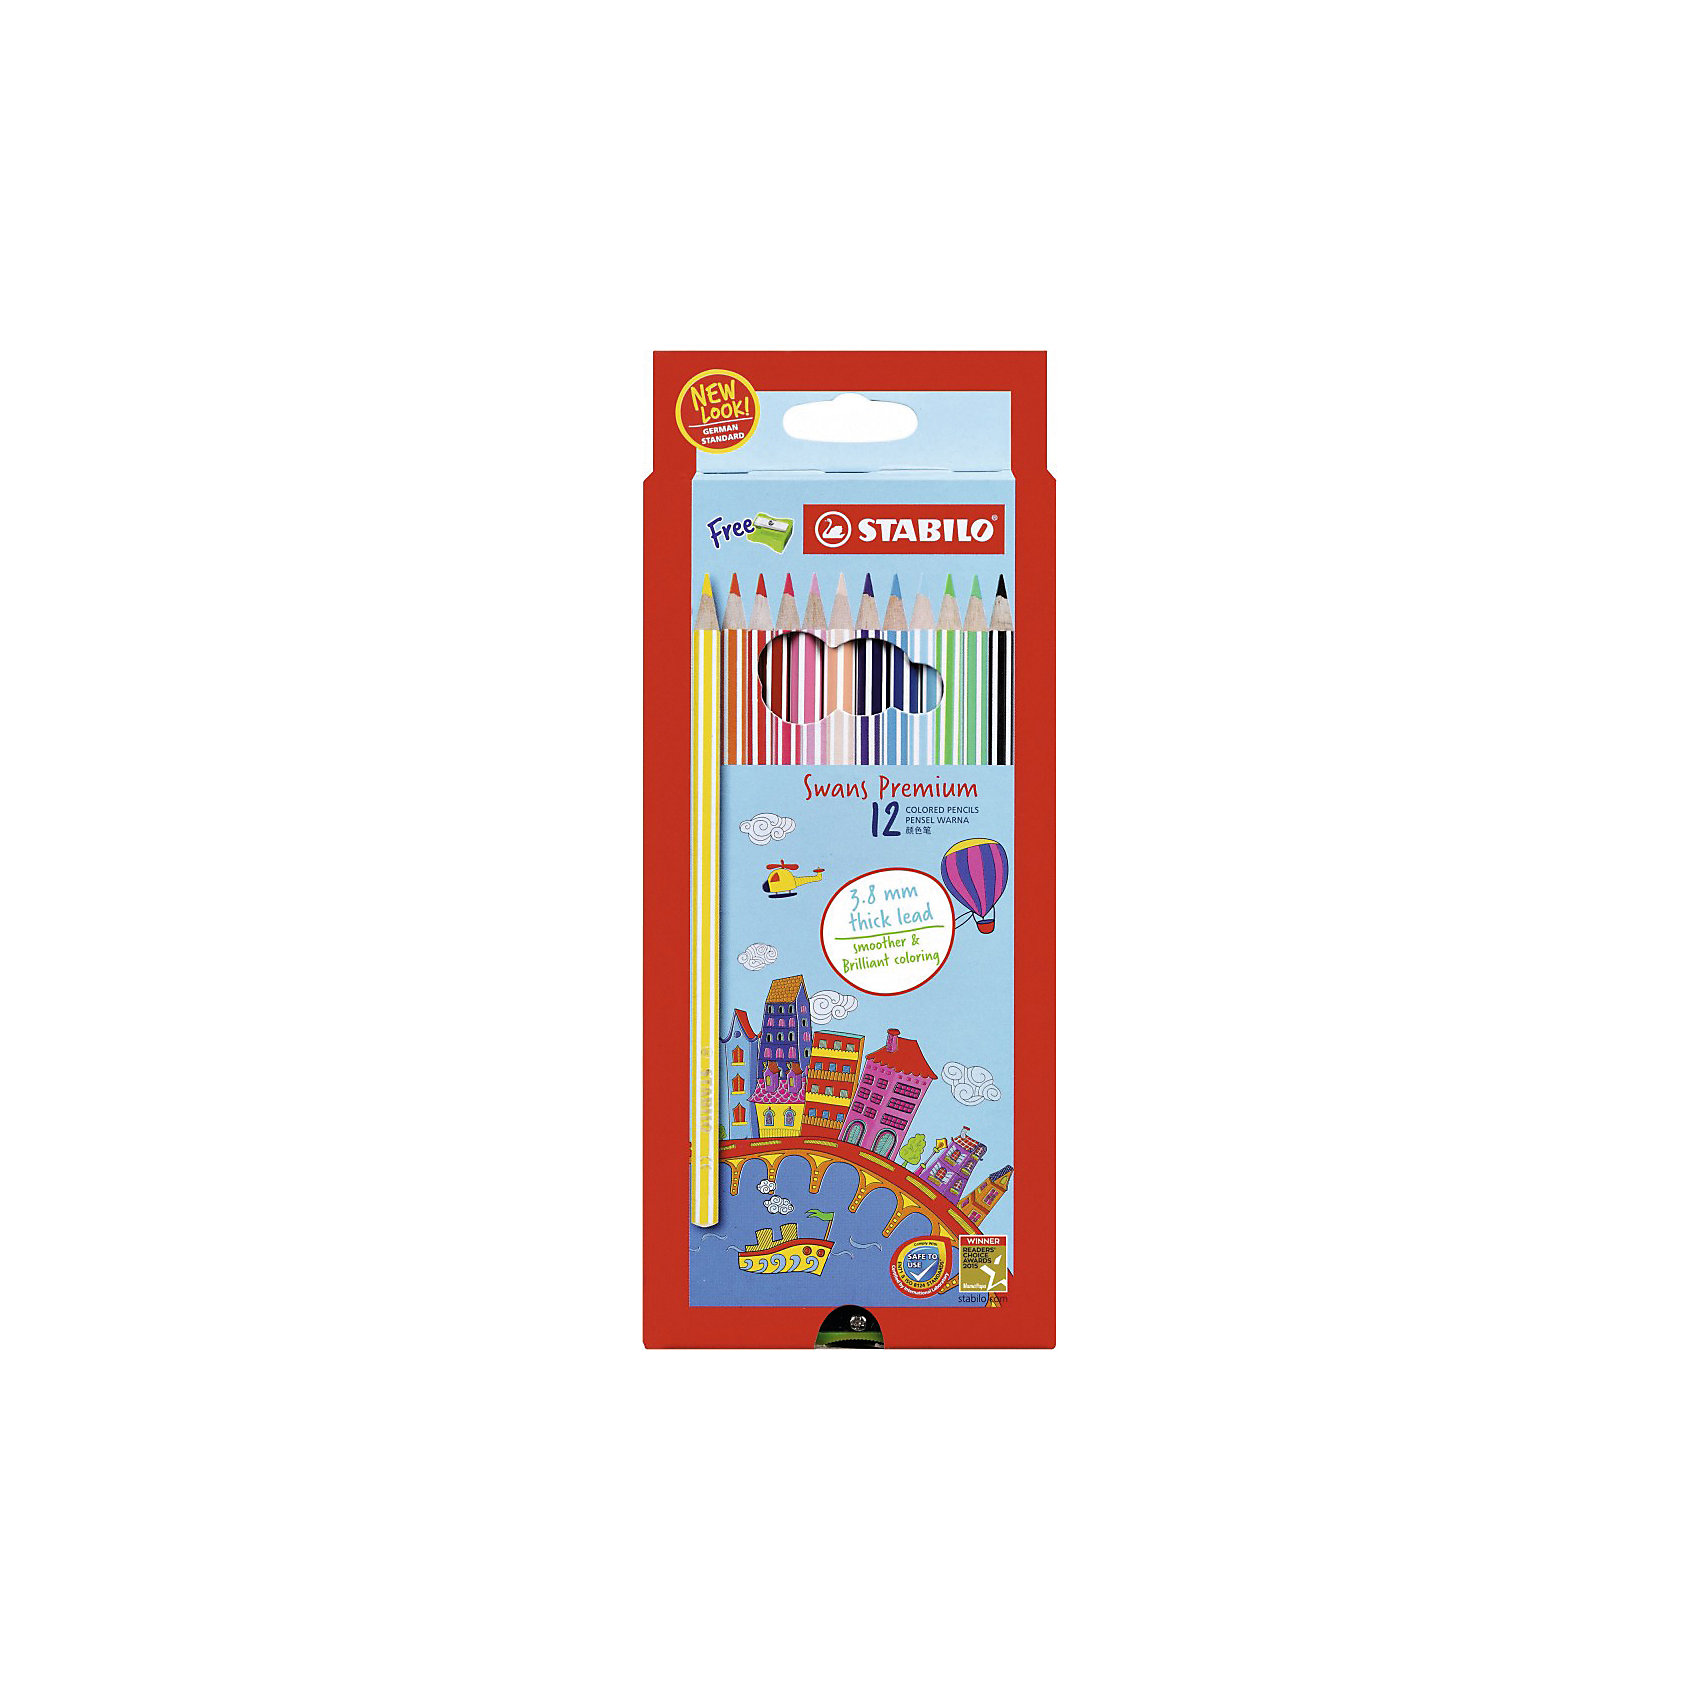 фото Набор цветных карандашей stabilo swans premium editional 12 цв, картон+точилка